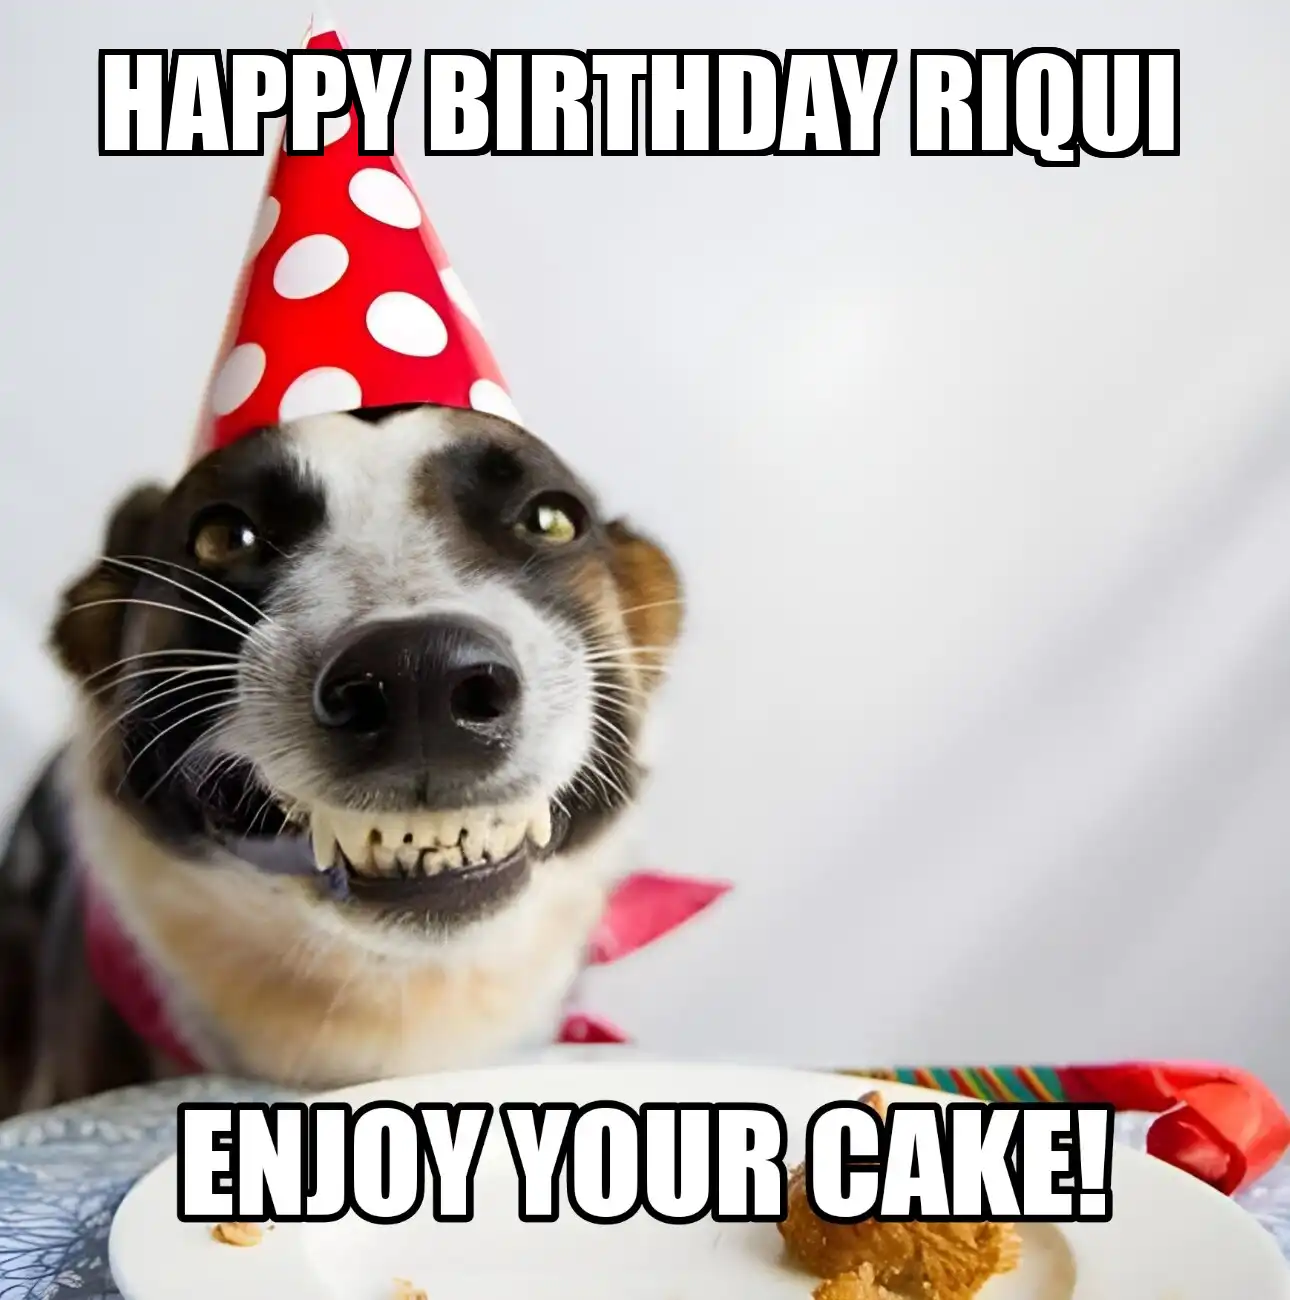 Happy Birthday Riqui Enjoy Your Cake Dog Meme